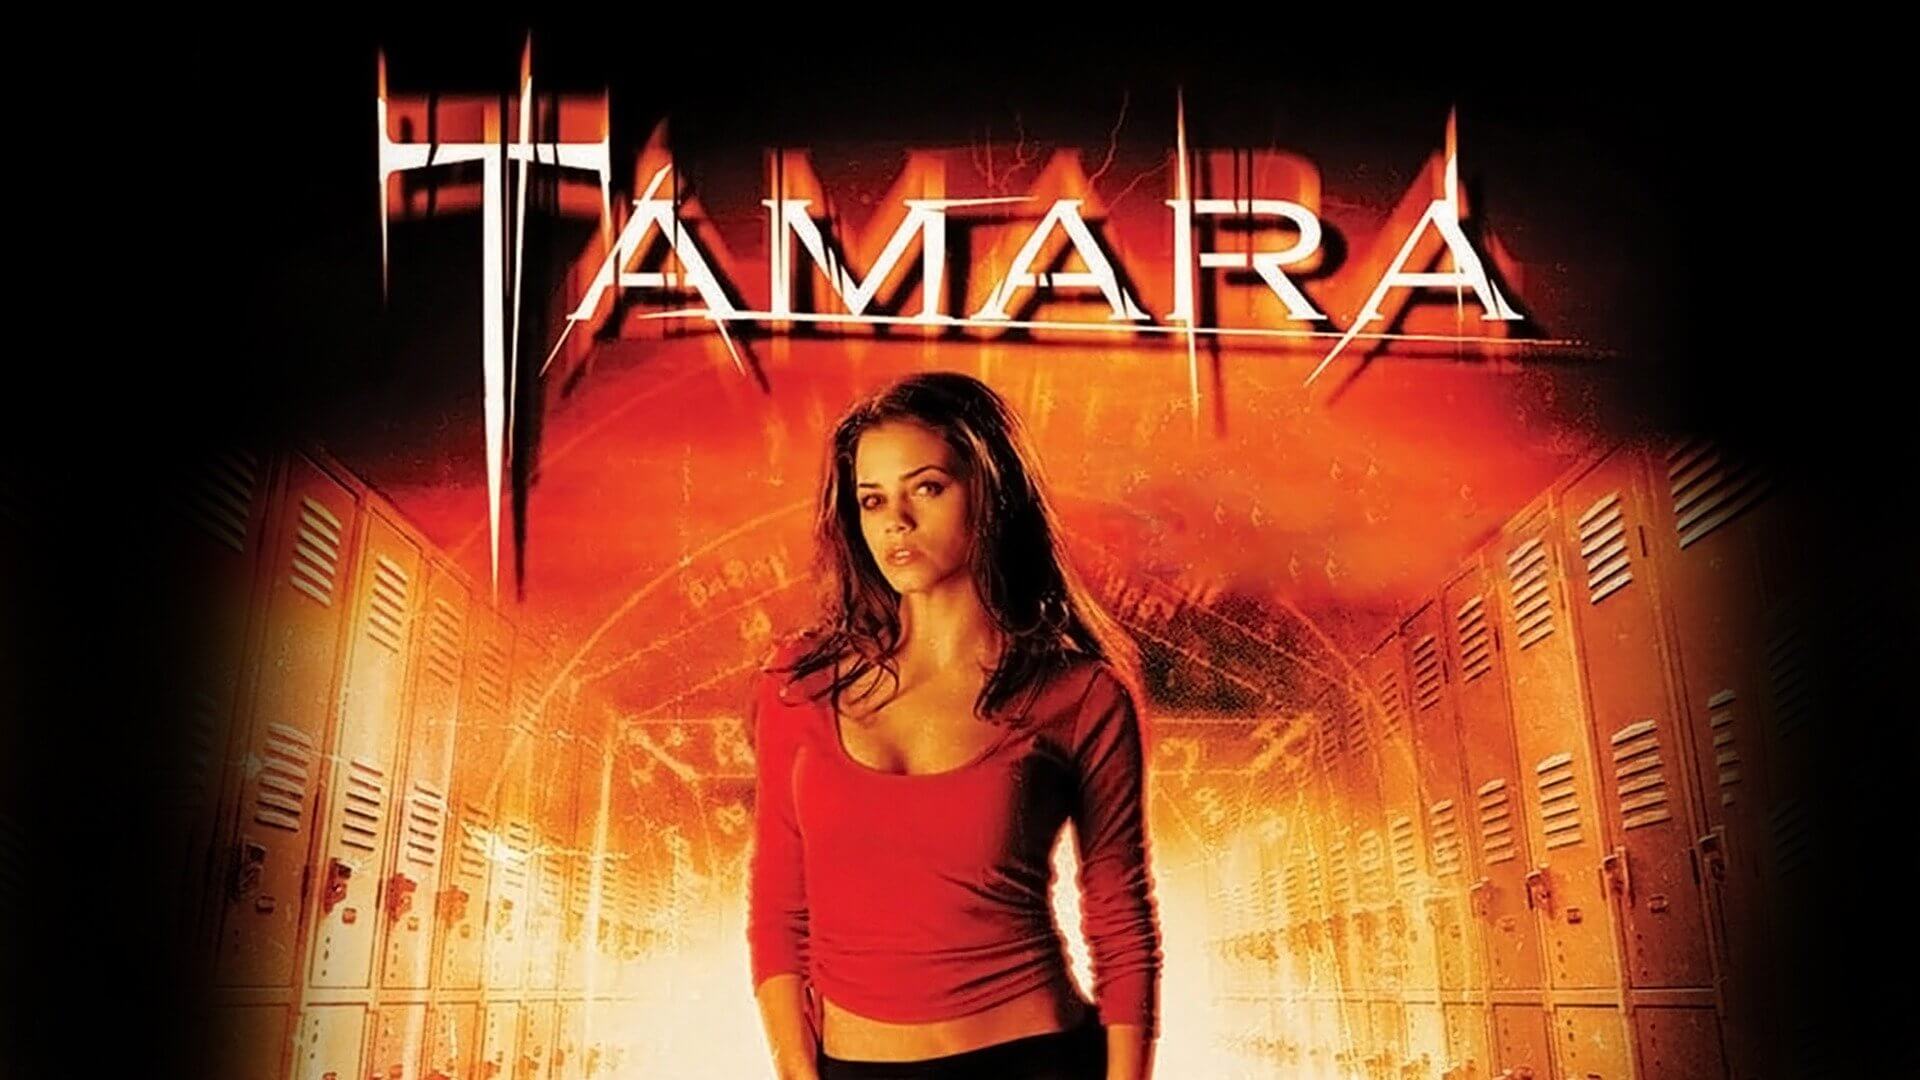 Tamara Review